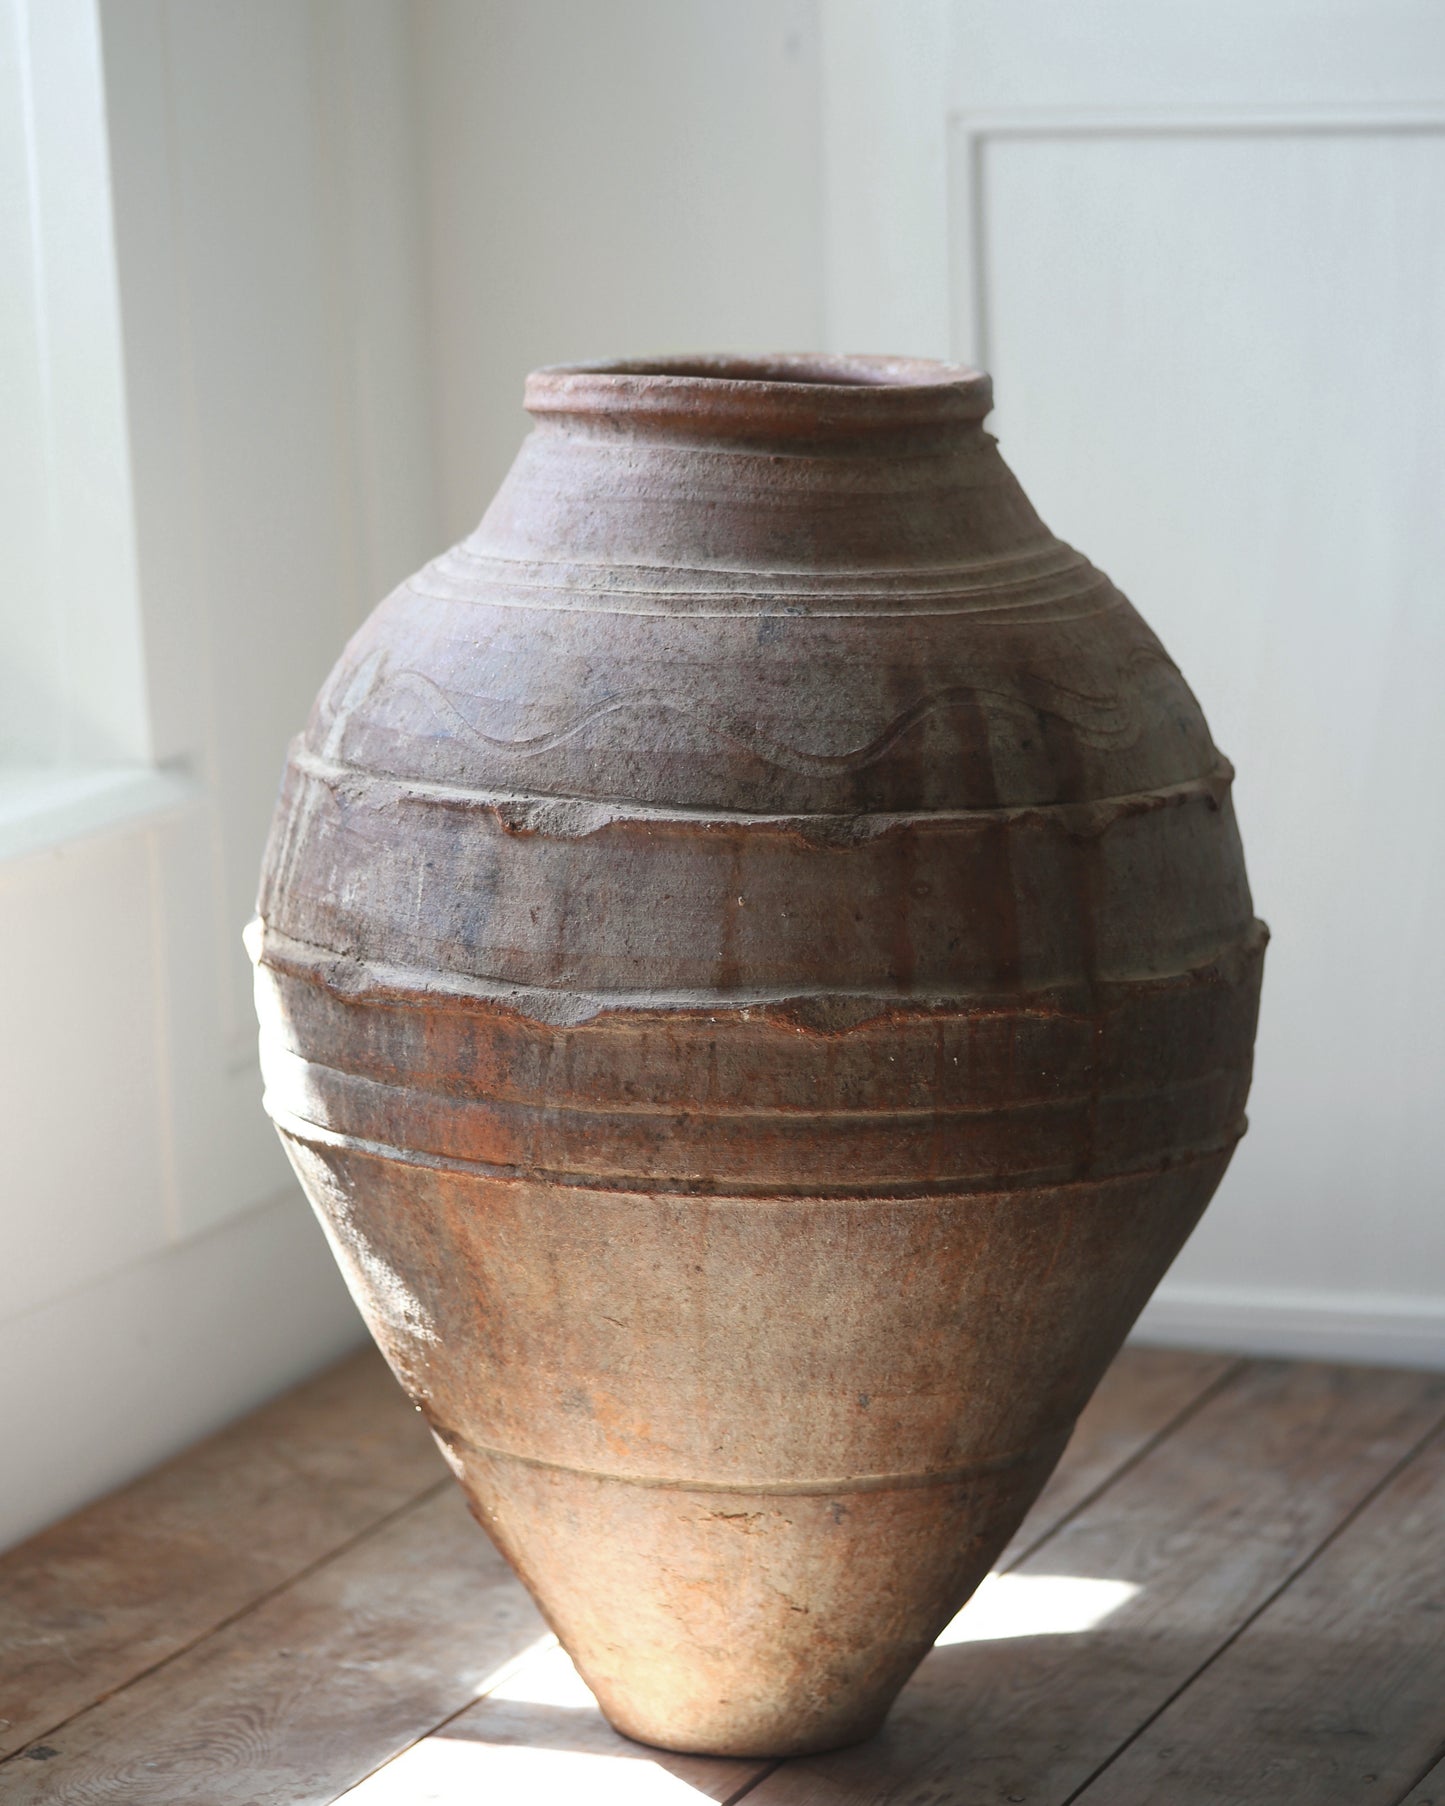 Huge heavy antique terracotta pot for statement interior or garden urn